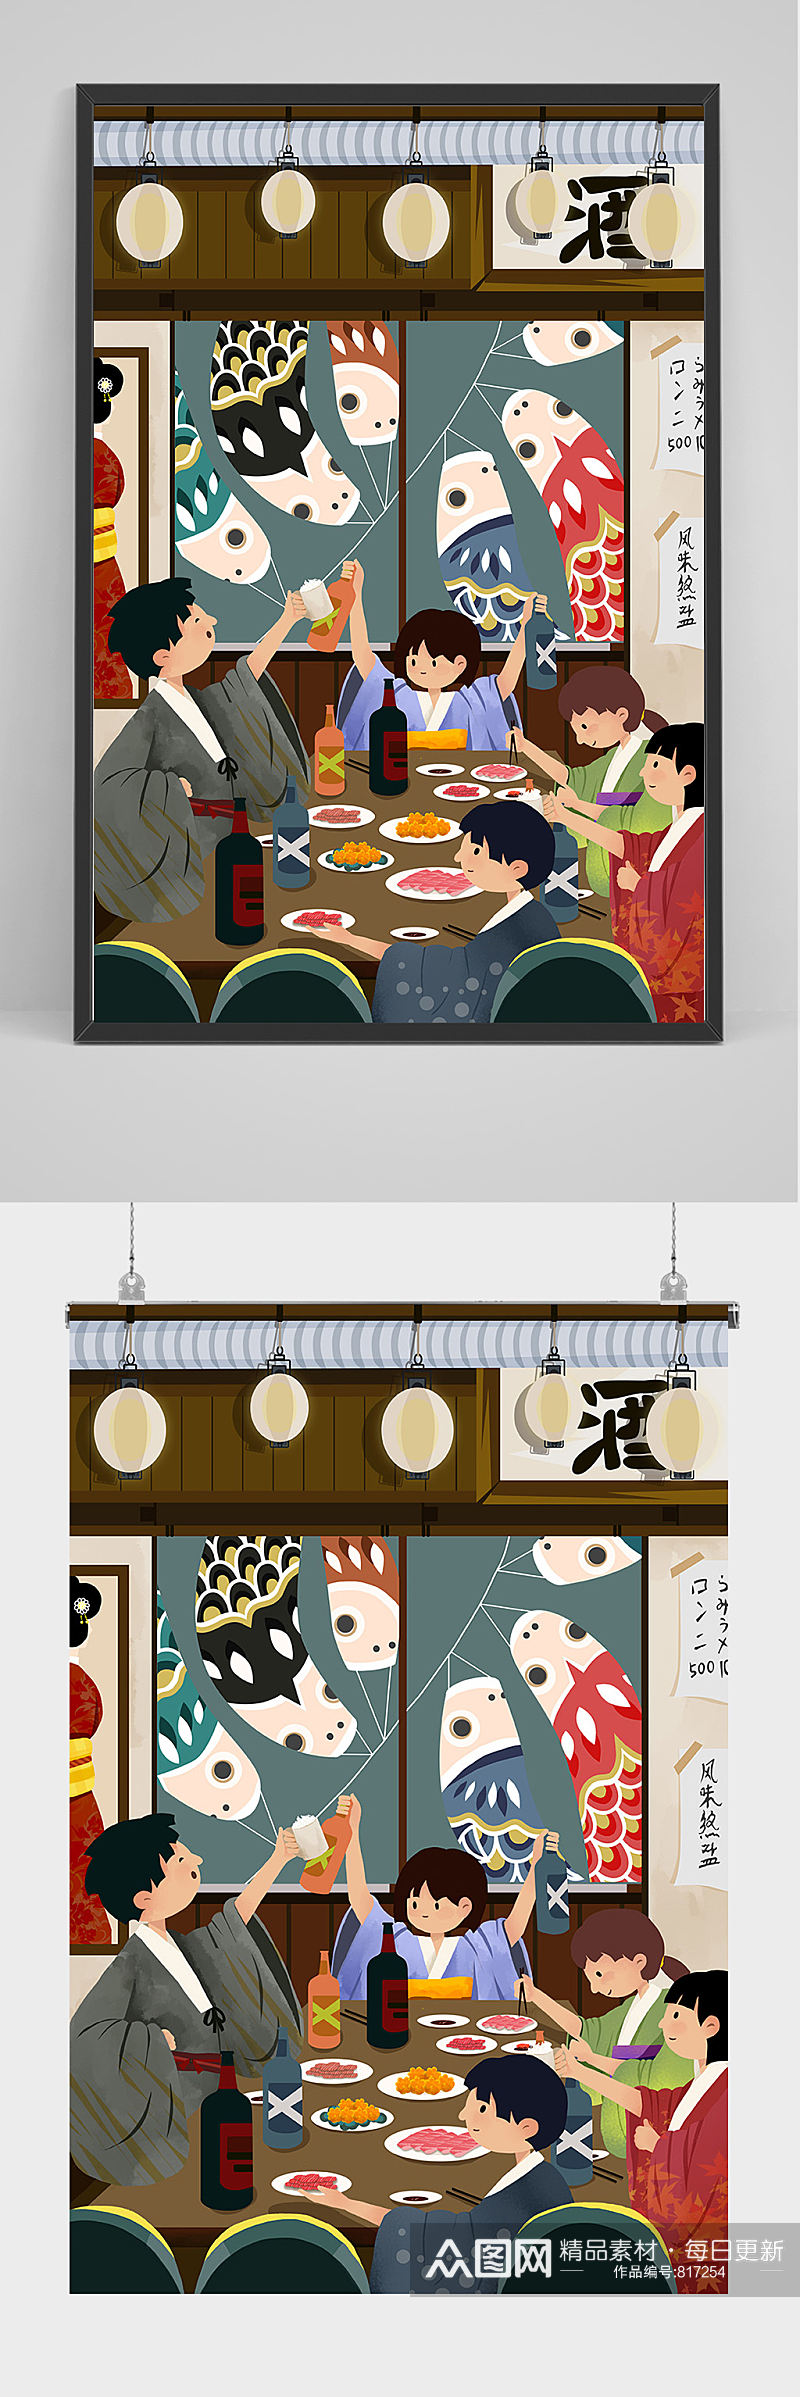 日式料理手绘插画设计素材